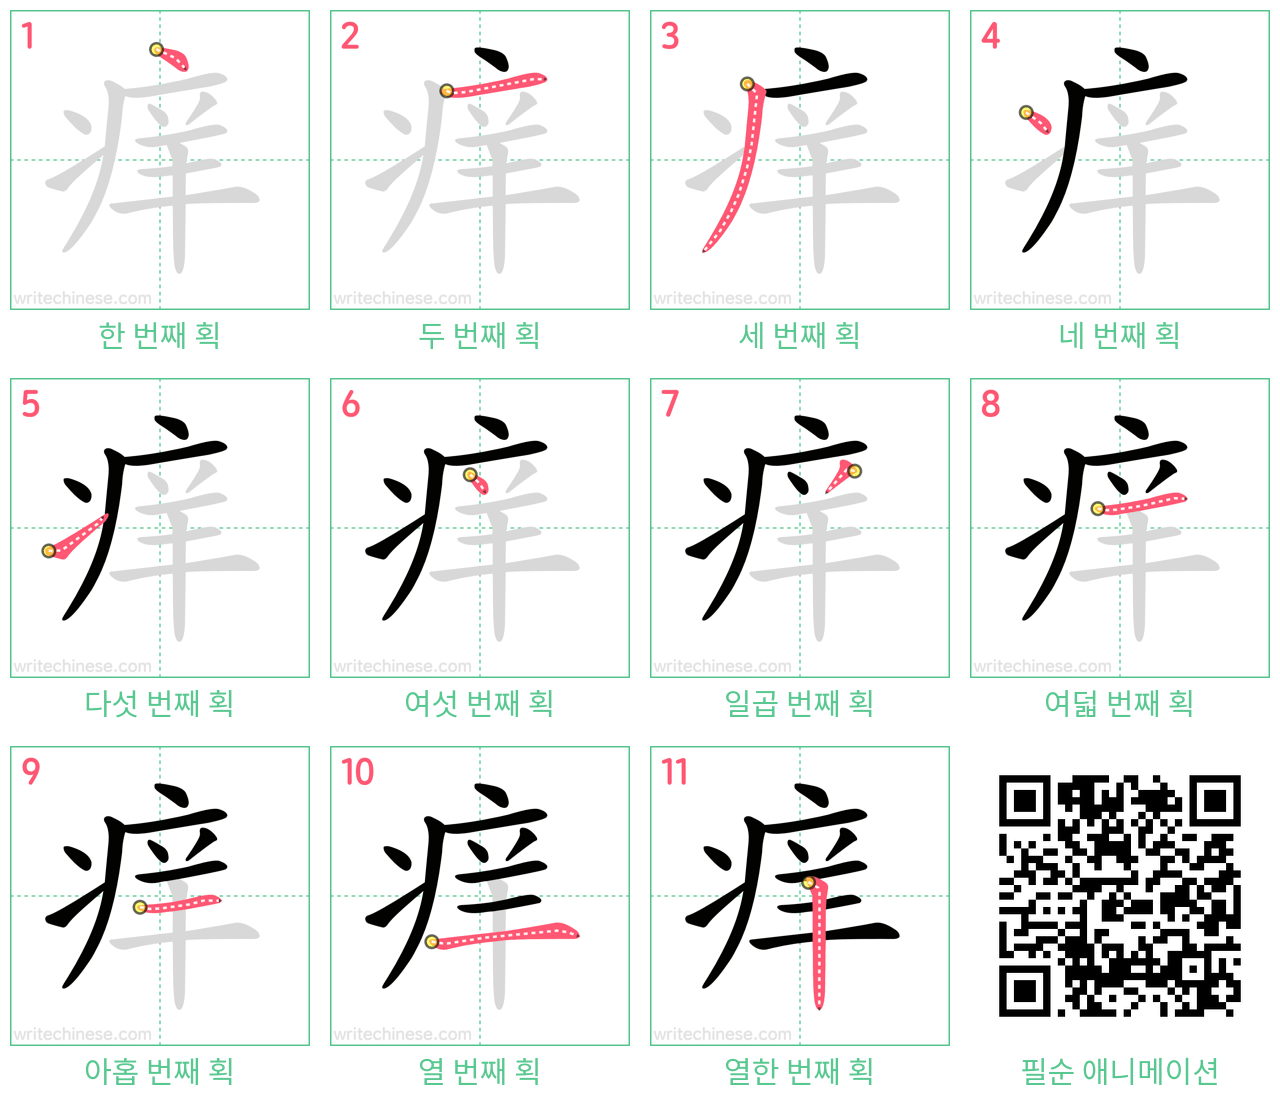 痒 step-by-step stroke order diagrams